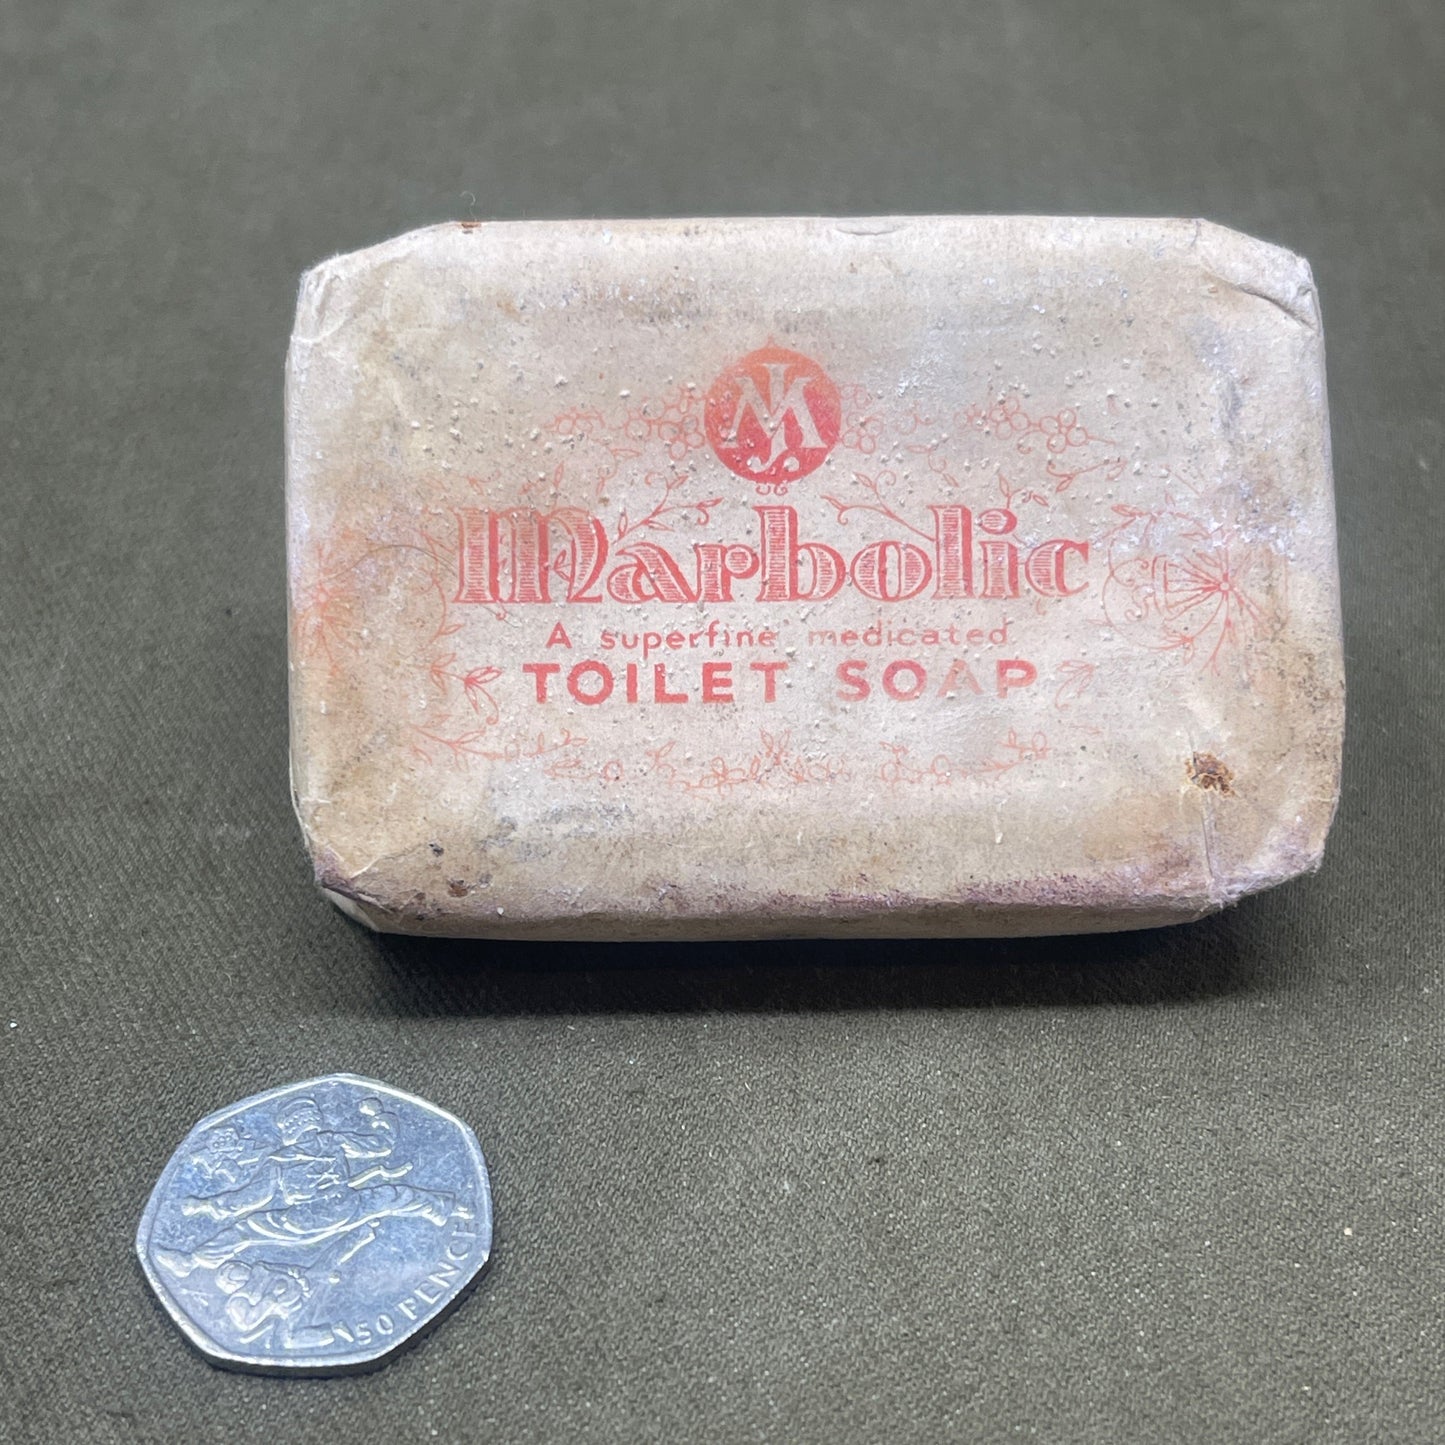 Marbolic Soap Joshua Margerison & Co